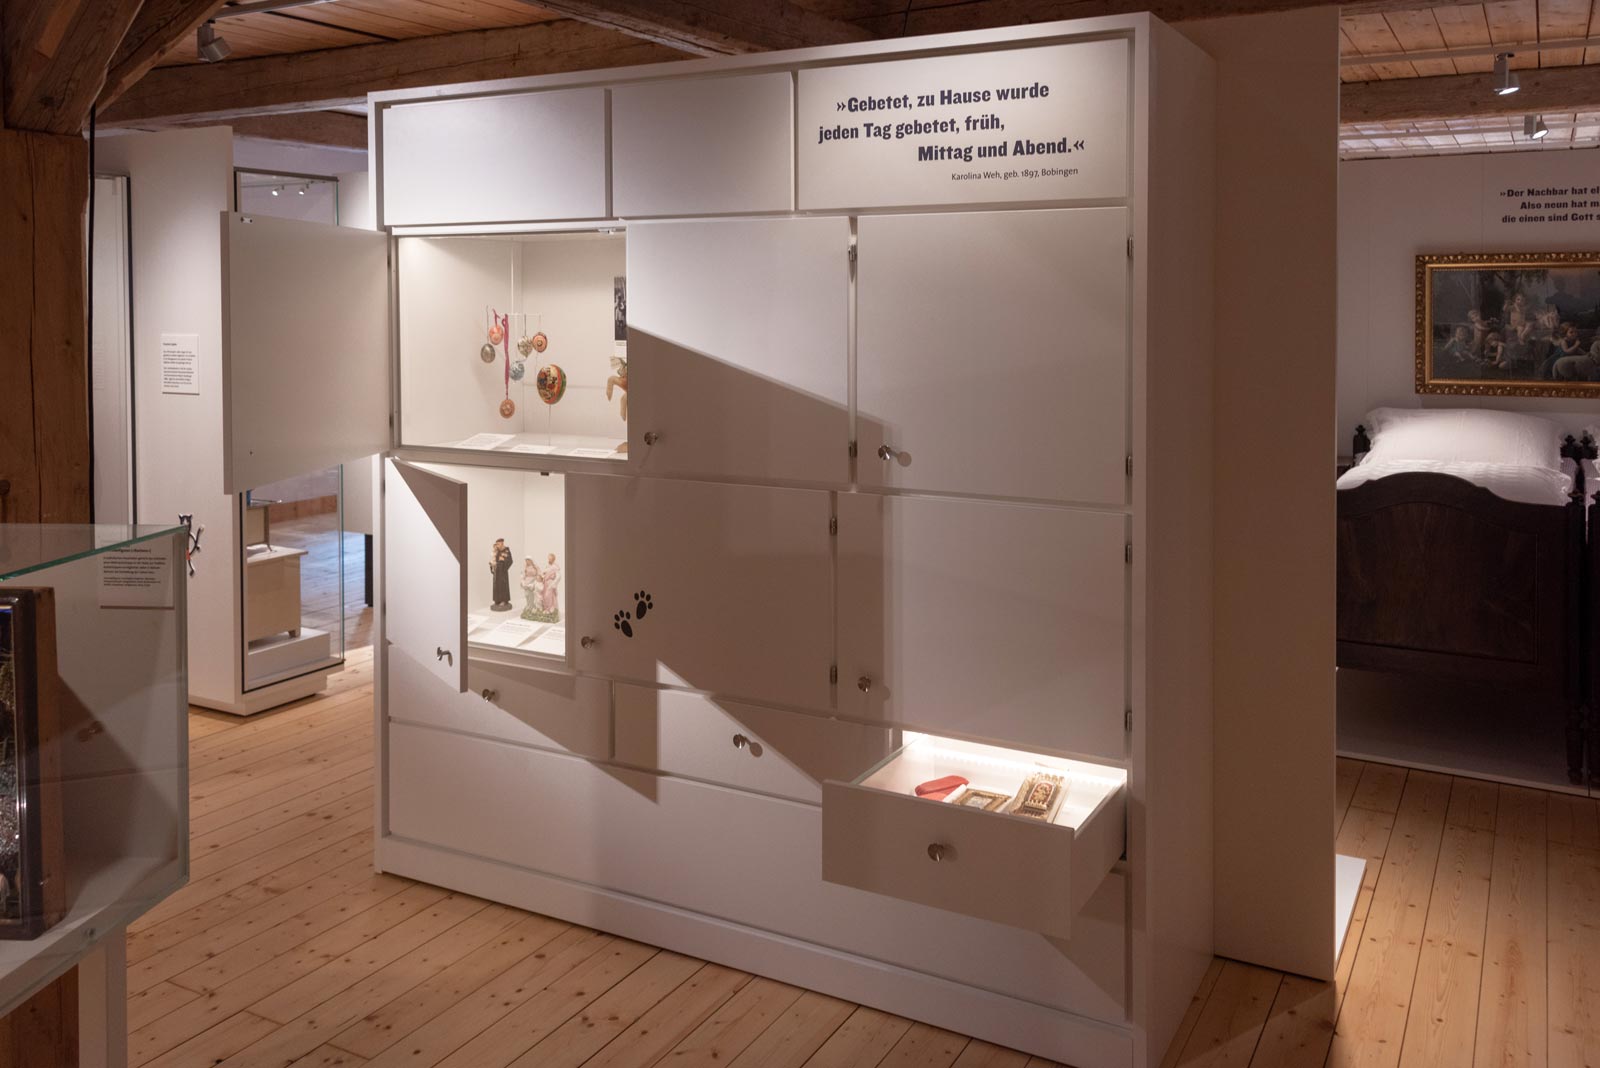 Das Referenzbild für Ausstellungsgestaltung aus der Dauerausstellung Tradition und Umbruch zeigt eine Hands-on-Station und eine Schrankvitrine.